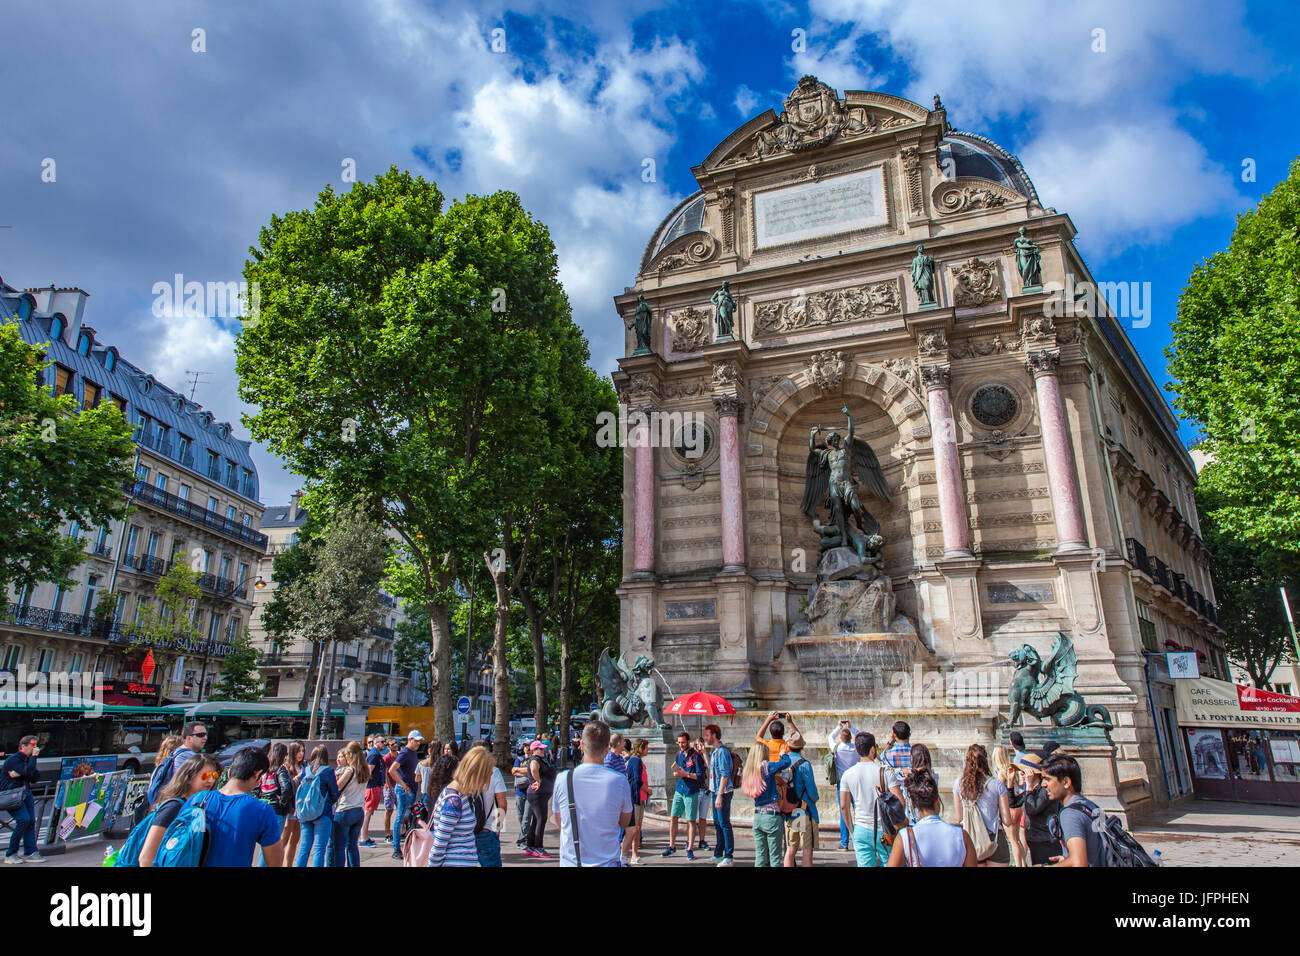 PARIS, FRANCE - 16 juin 2017 : personnes non identifiées par Fontaine Saint Michel à Paris, France. Fontaine a été construite en 1858-1860 par l'architecte Gabri Banque D'Images